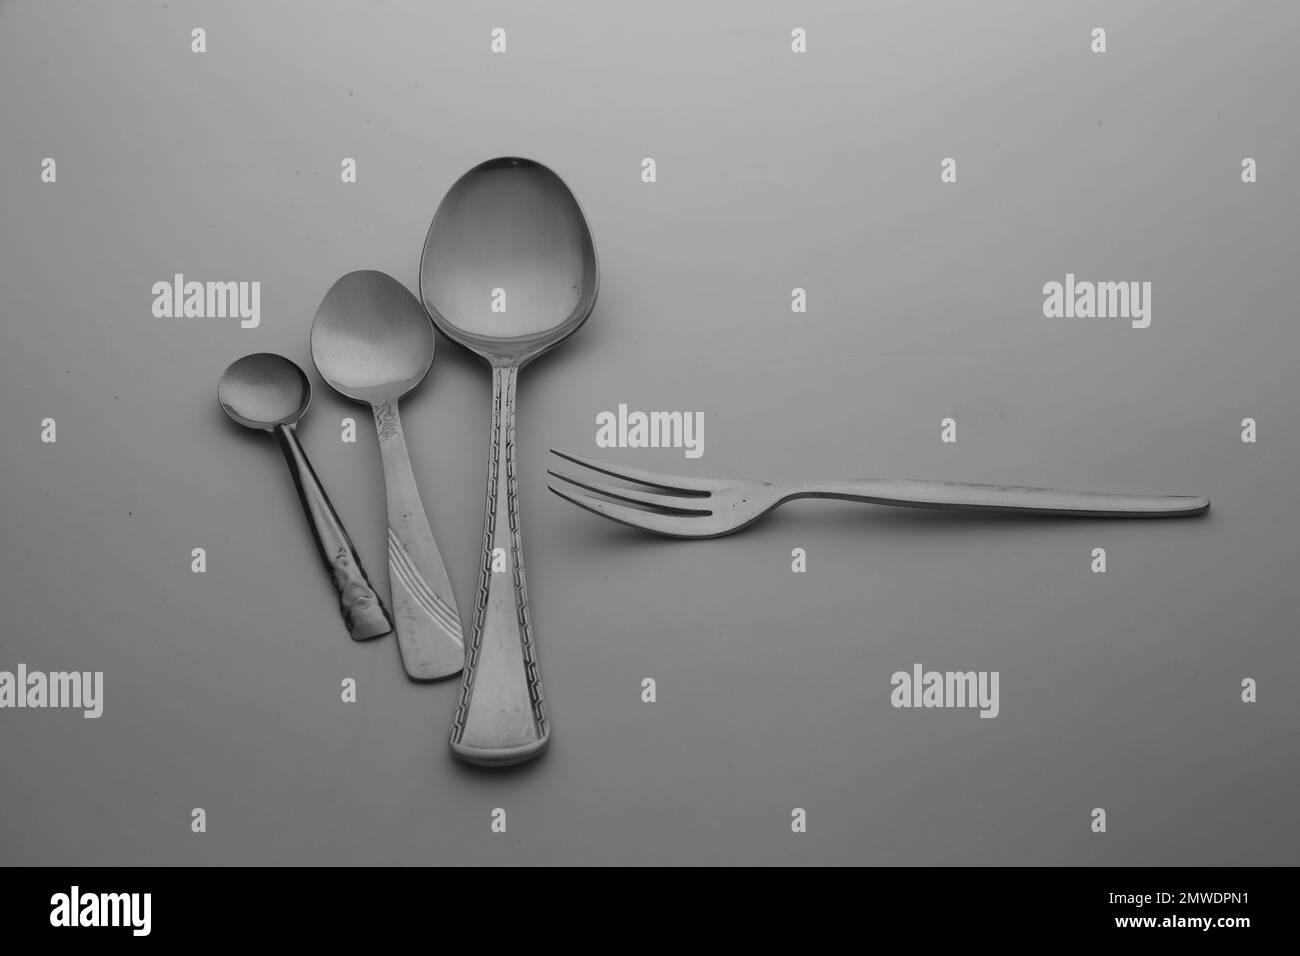 La cuchara de plata, tenedores y cubiertos de cuchillo aislados en el fondo de mesa gris vacío Foto de stock